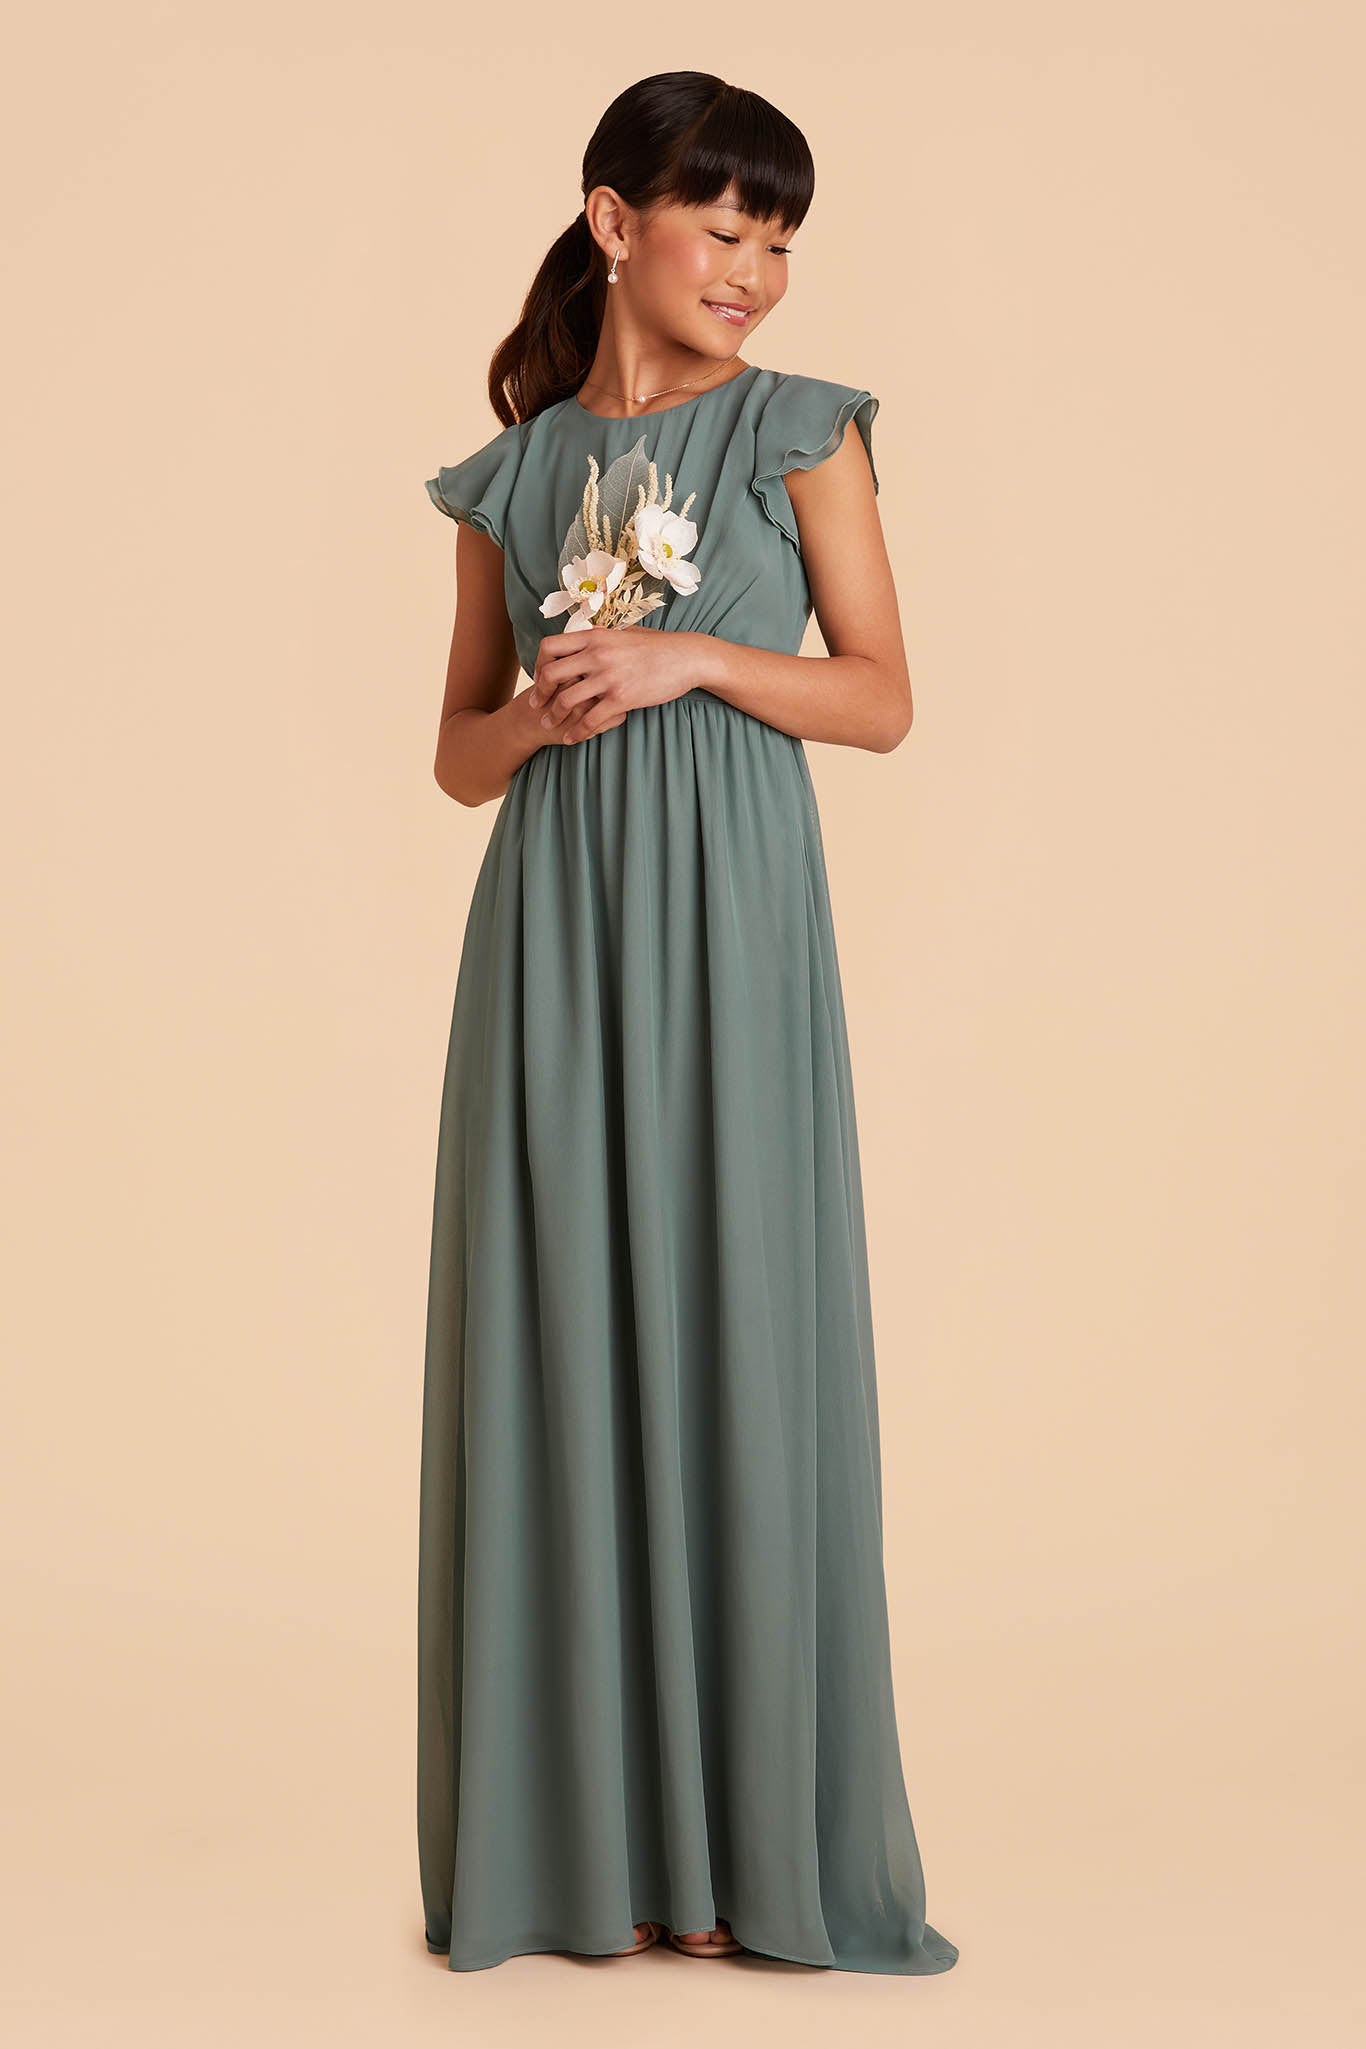 sea glass medium green frilly-sleeved floor length junior bridesmaid dress 